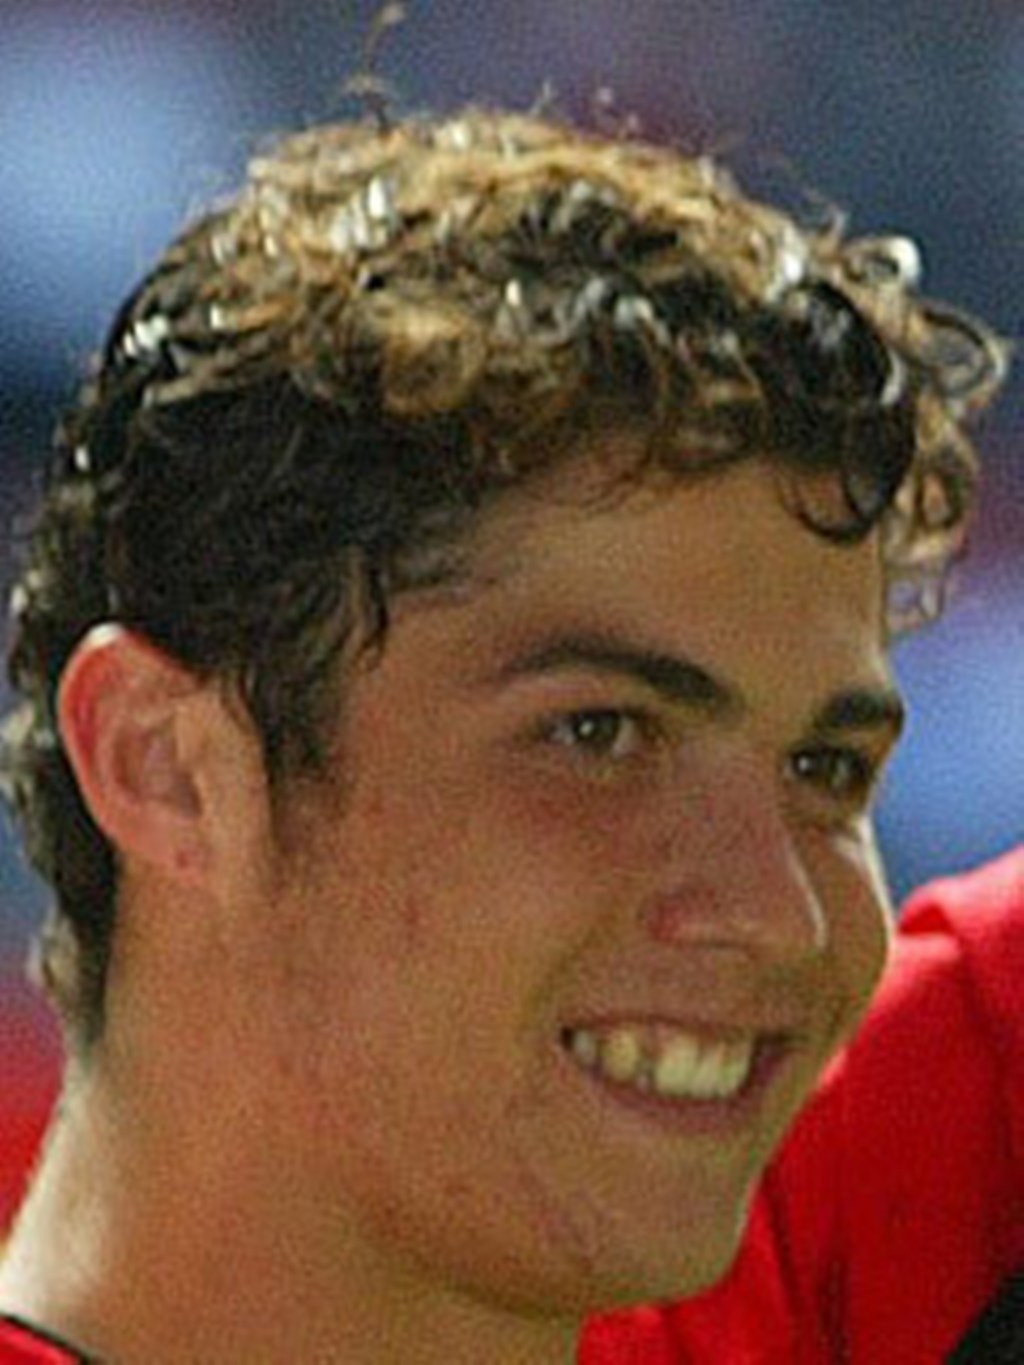 http://4.bp.blogspot.com/-u52WQeADDhA/T211A7JBDfI/AAAAAAAAANQ/hwfjwhnotOM/s1600/Ronaldo-with-wavy-hair-cristiano-ronaldo-16690556-1024-1365.jpg